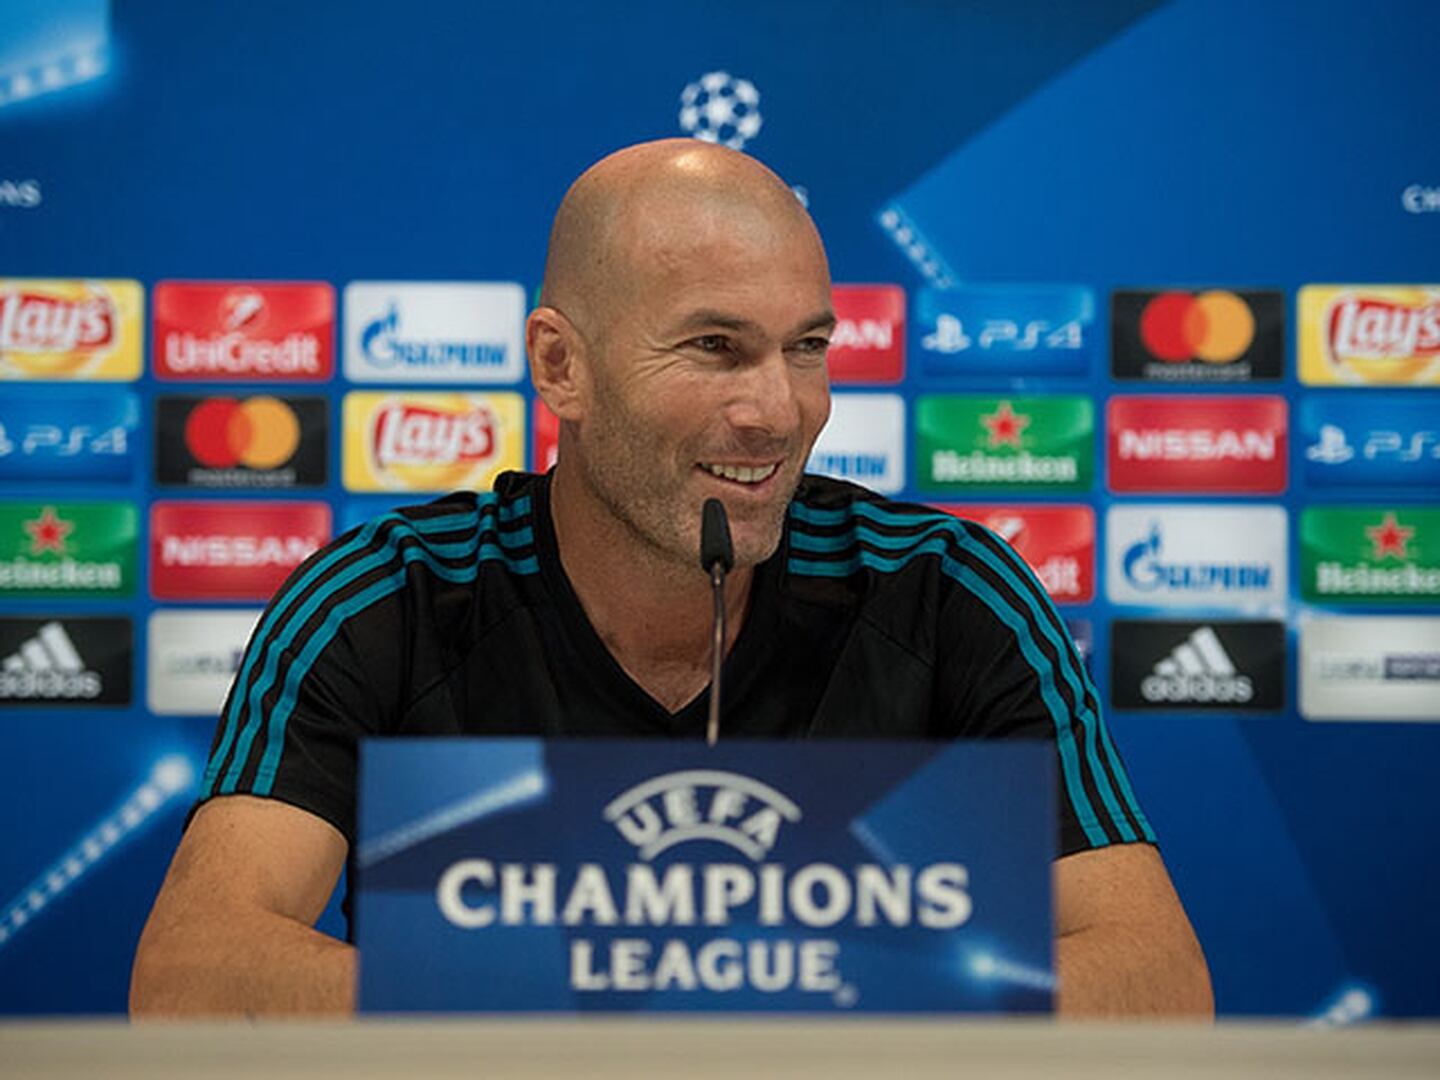 El expediente disciplinario de UEFA a Carvajal sorprende a Zidane